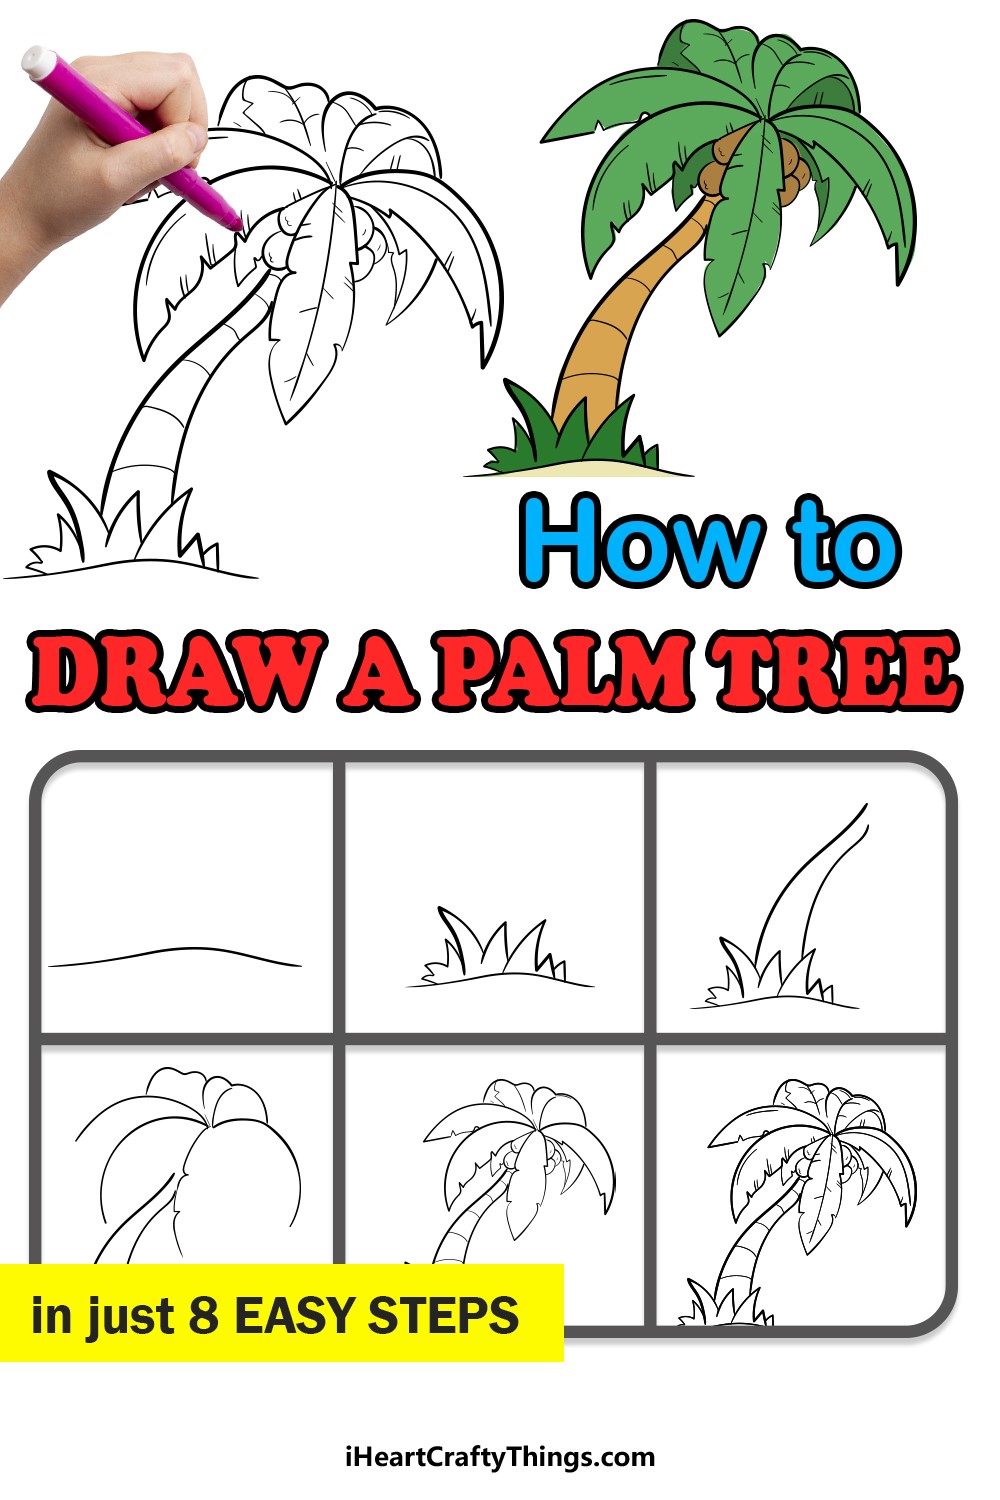 Palmu-idea 9 piirustus